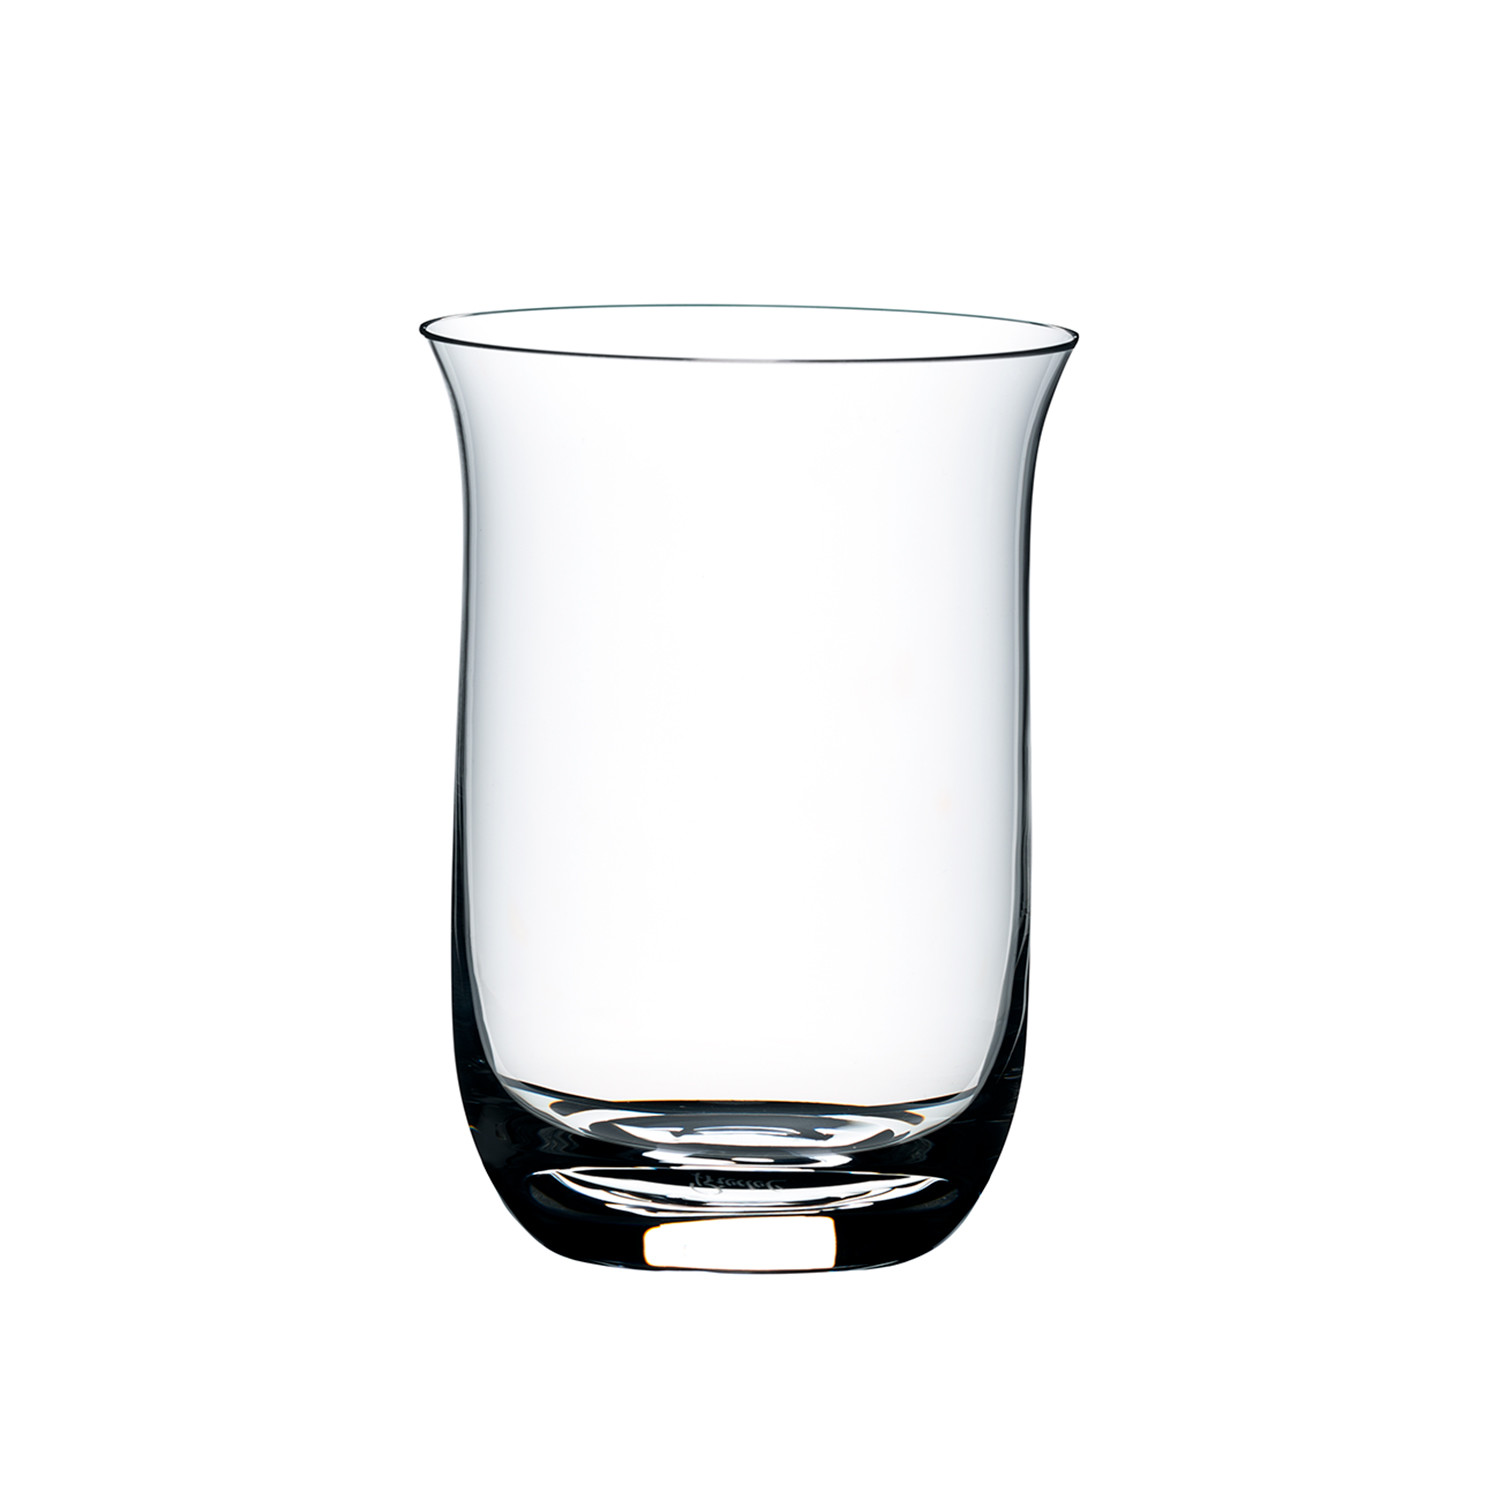 Single o. Хайбол "Гибралтар" 414мл. Riedel Single Malt Glass. Single Malt Glass от Riedel. Тумблер для виски.